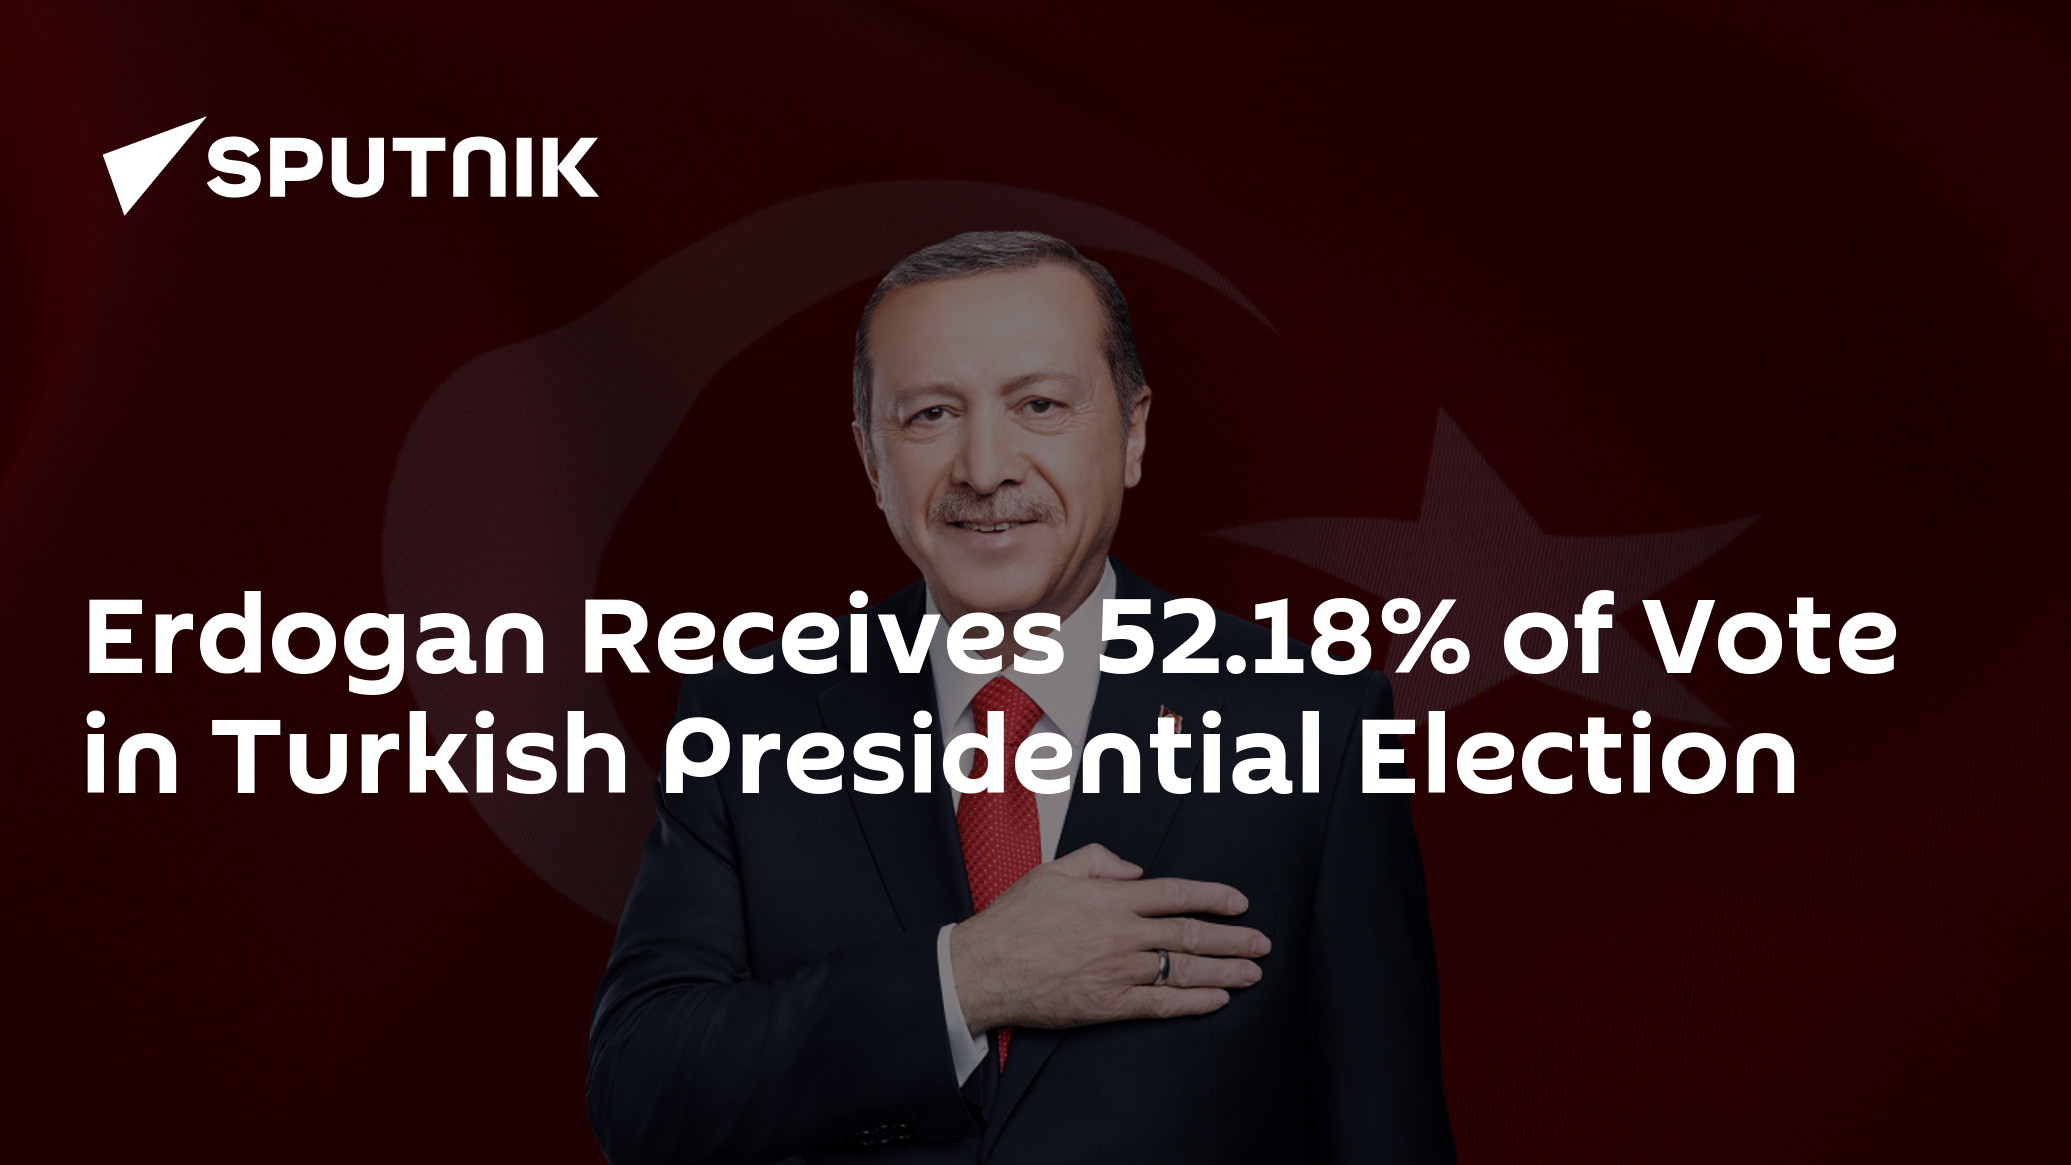 Erdogan Receives 52.18% of Vote in Turkish Presidential Election